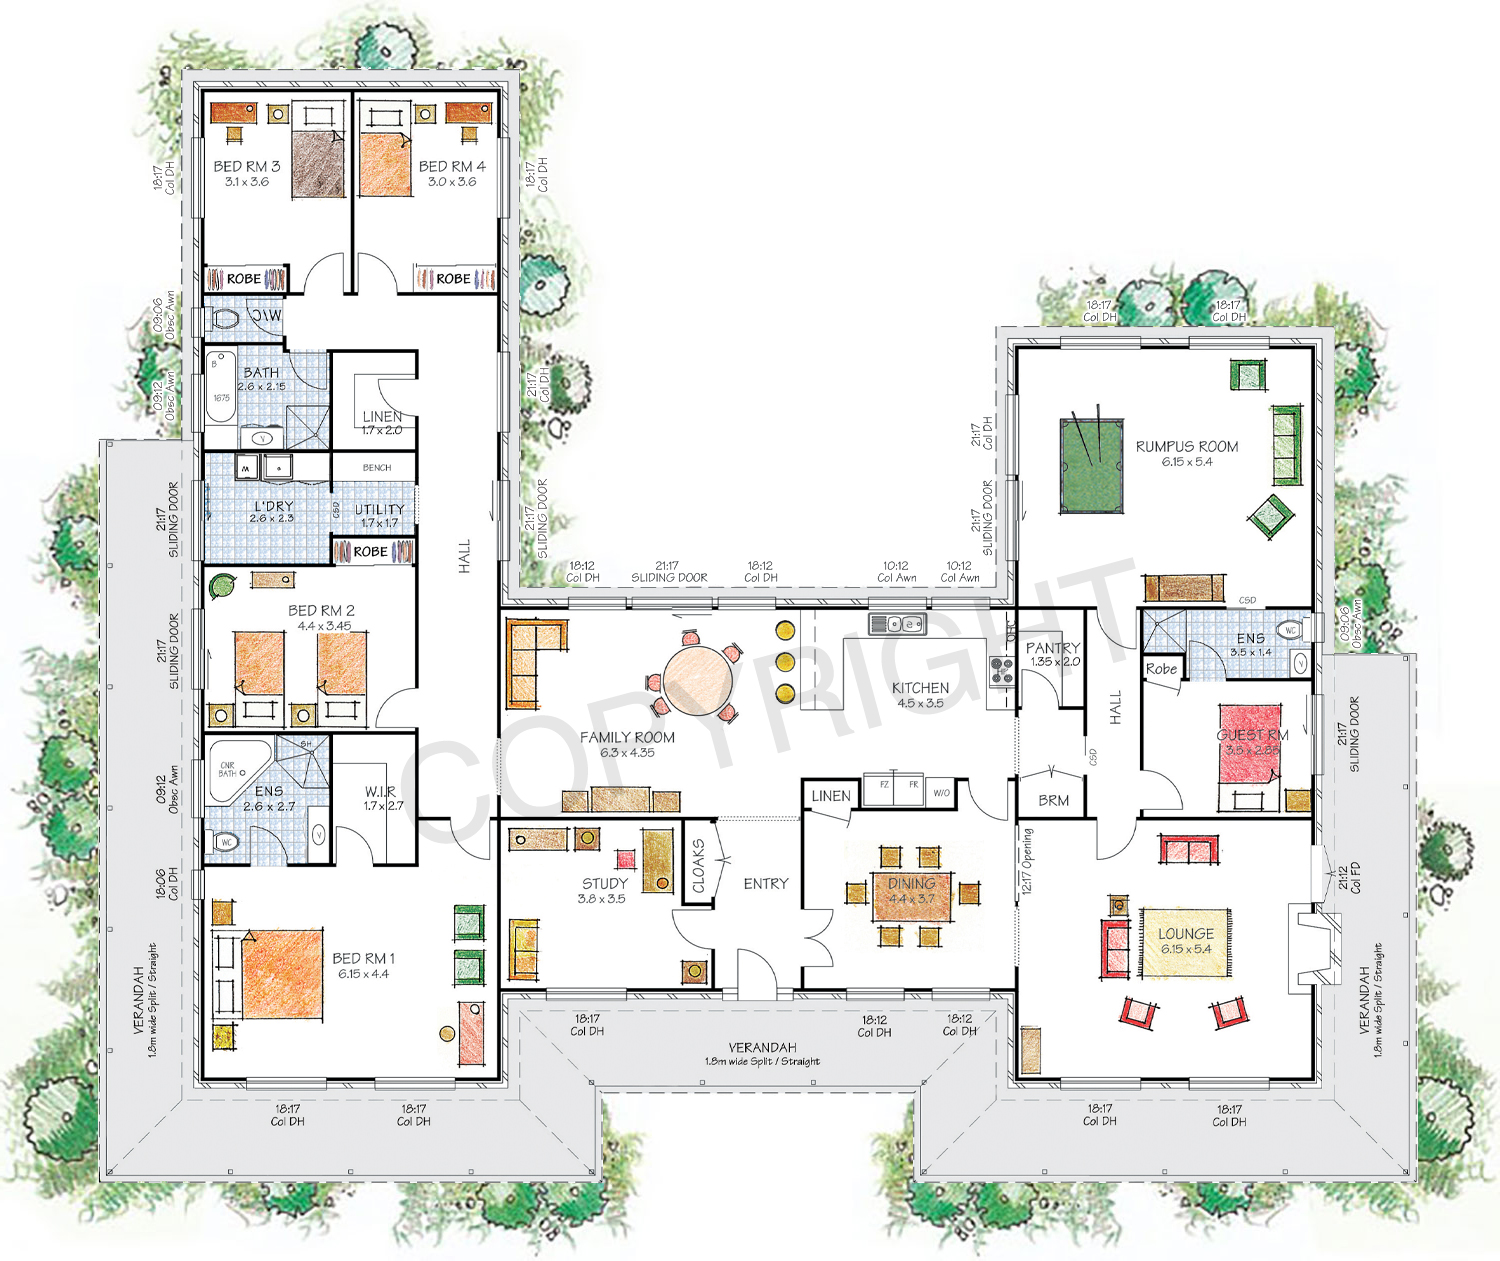 The Castlereagh floor plan